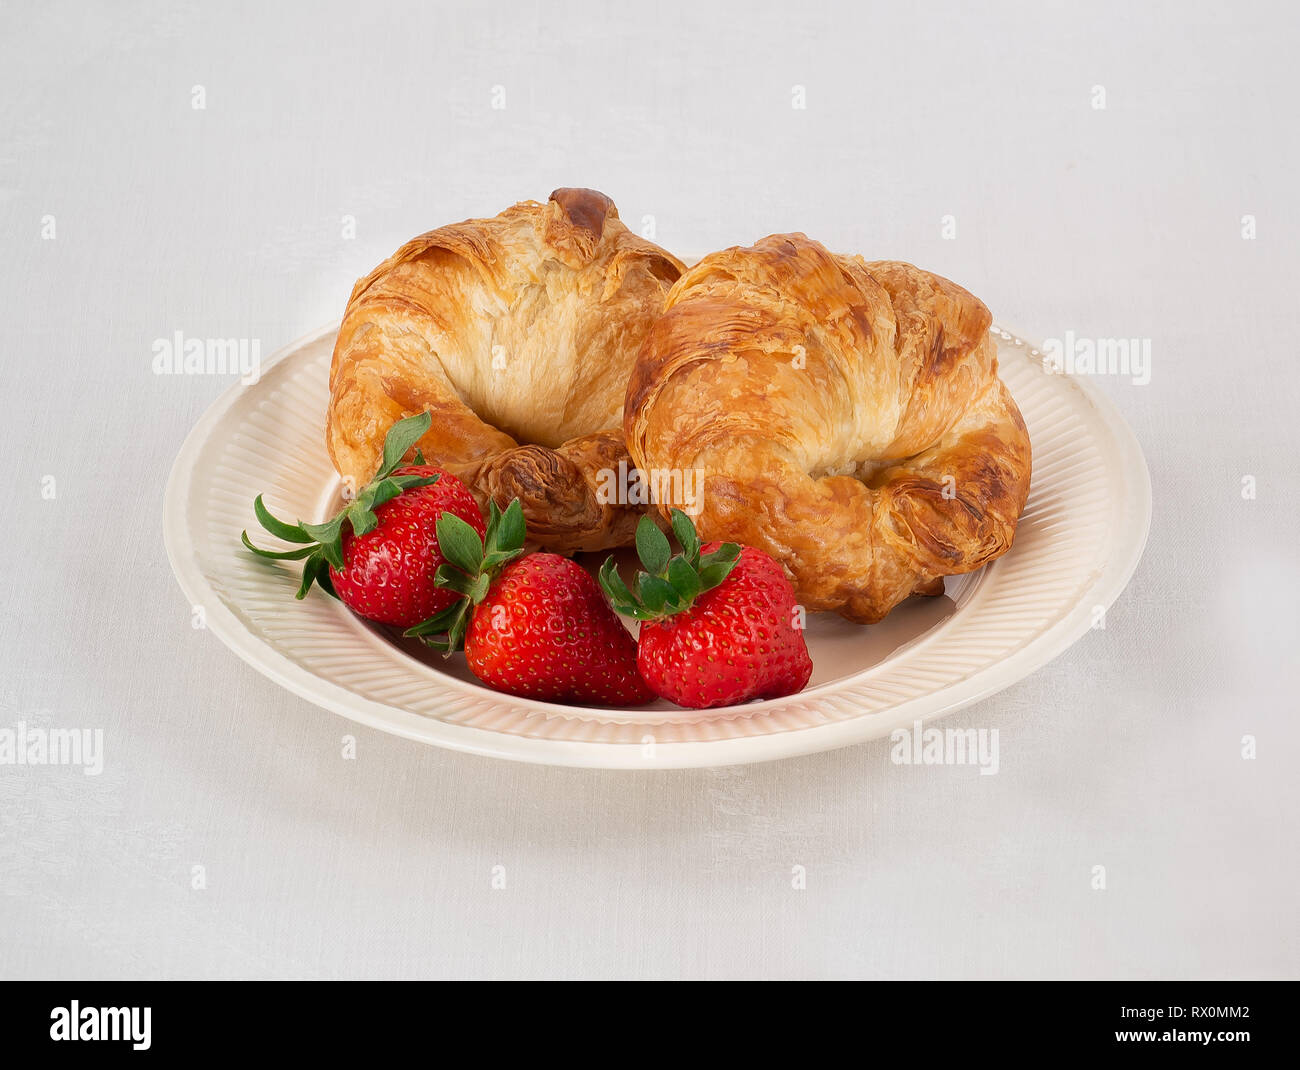 Plaque de couleur crème avec deux croissants et trois fraises sur une nappe de lin blanc. Banque D'Images